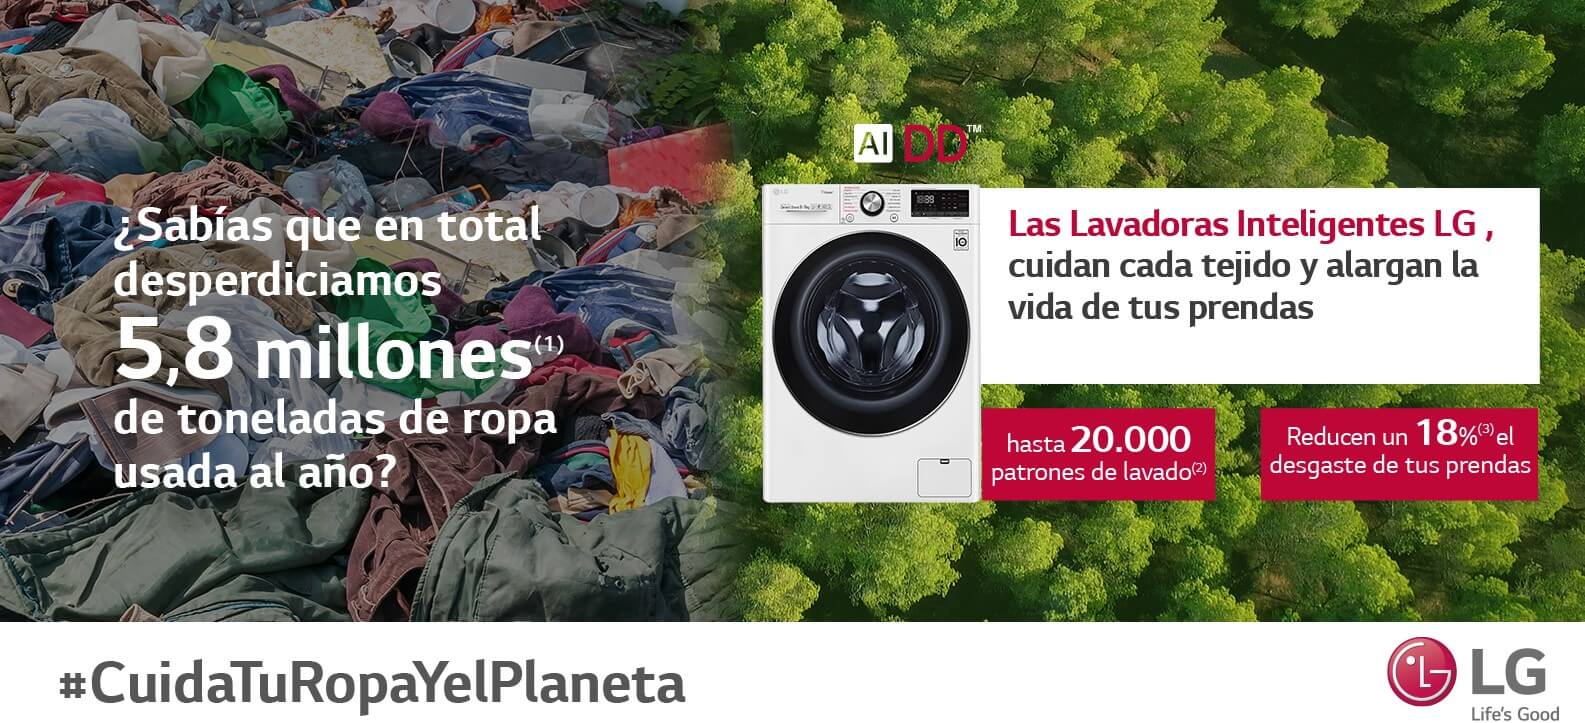 Imagen de la campaña diciendo que desperdiciamos 5,8 millones de toneladas de ropa al año.